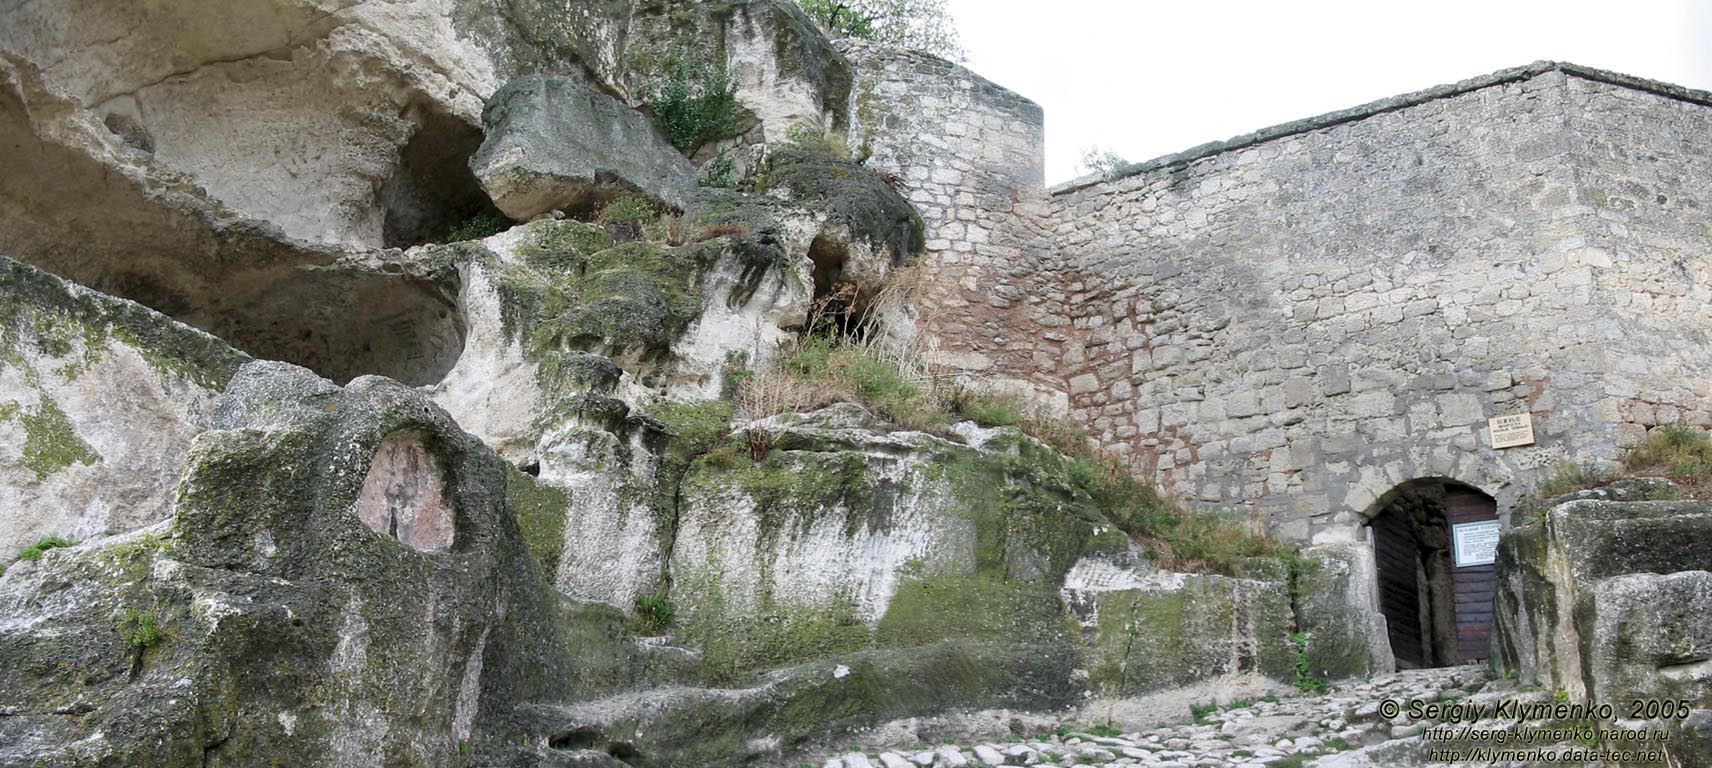 Крым. Чуфут-Кале, Малые (Южные) ворота, вид снаружи крепости.